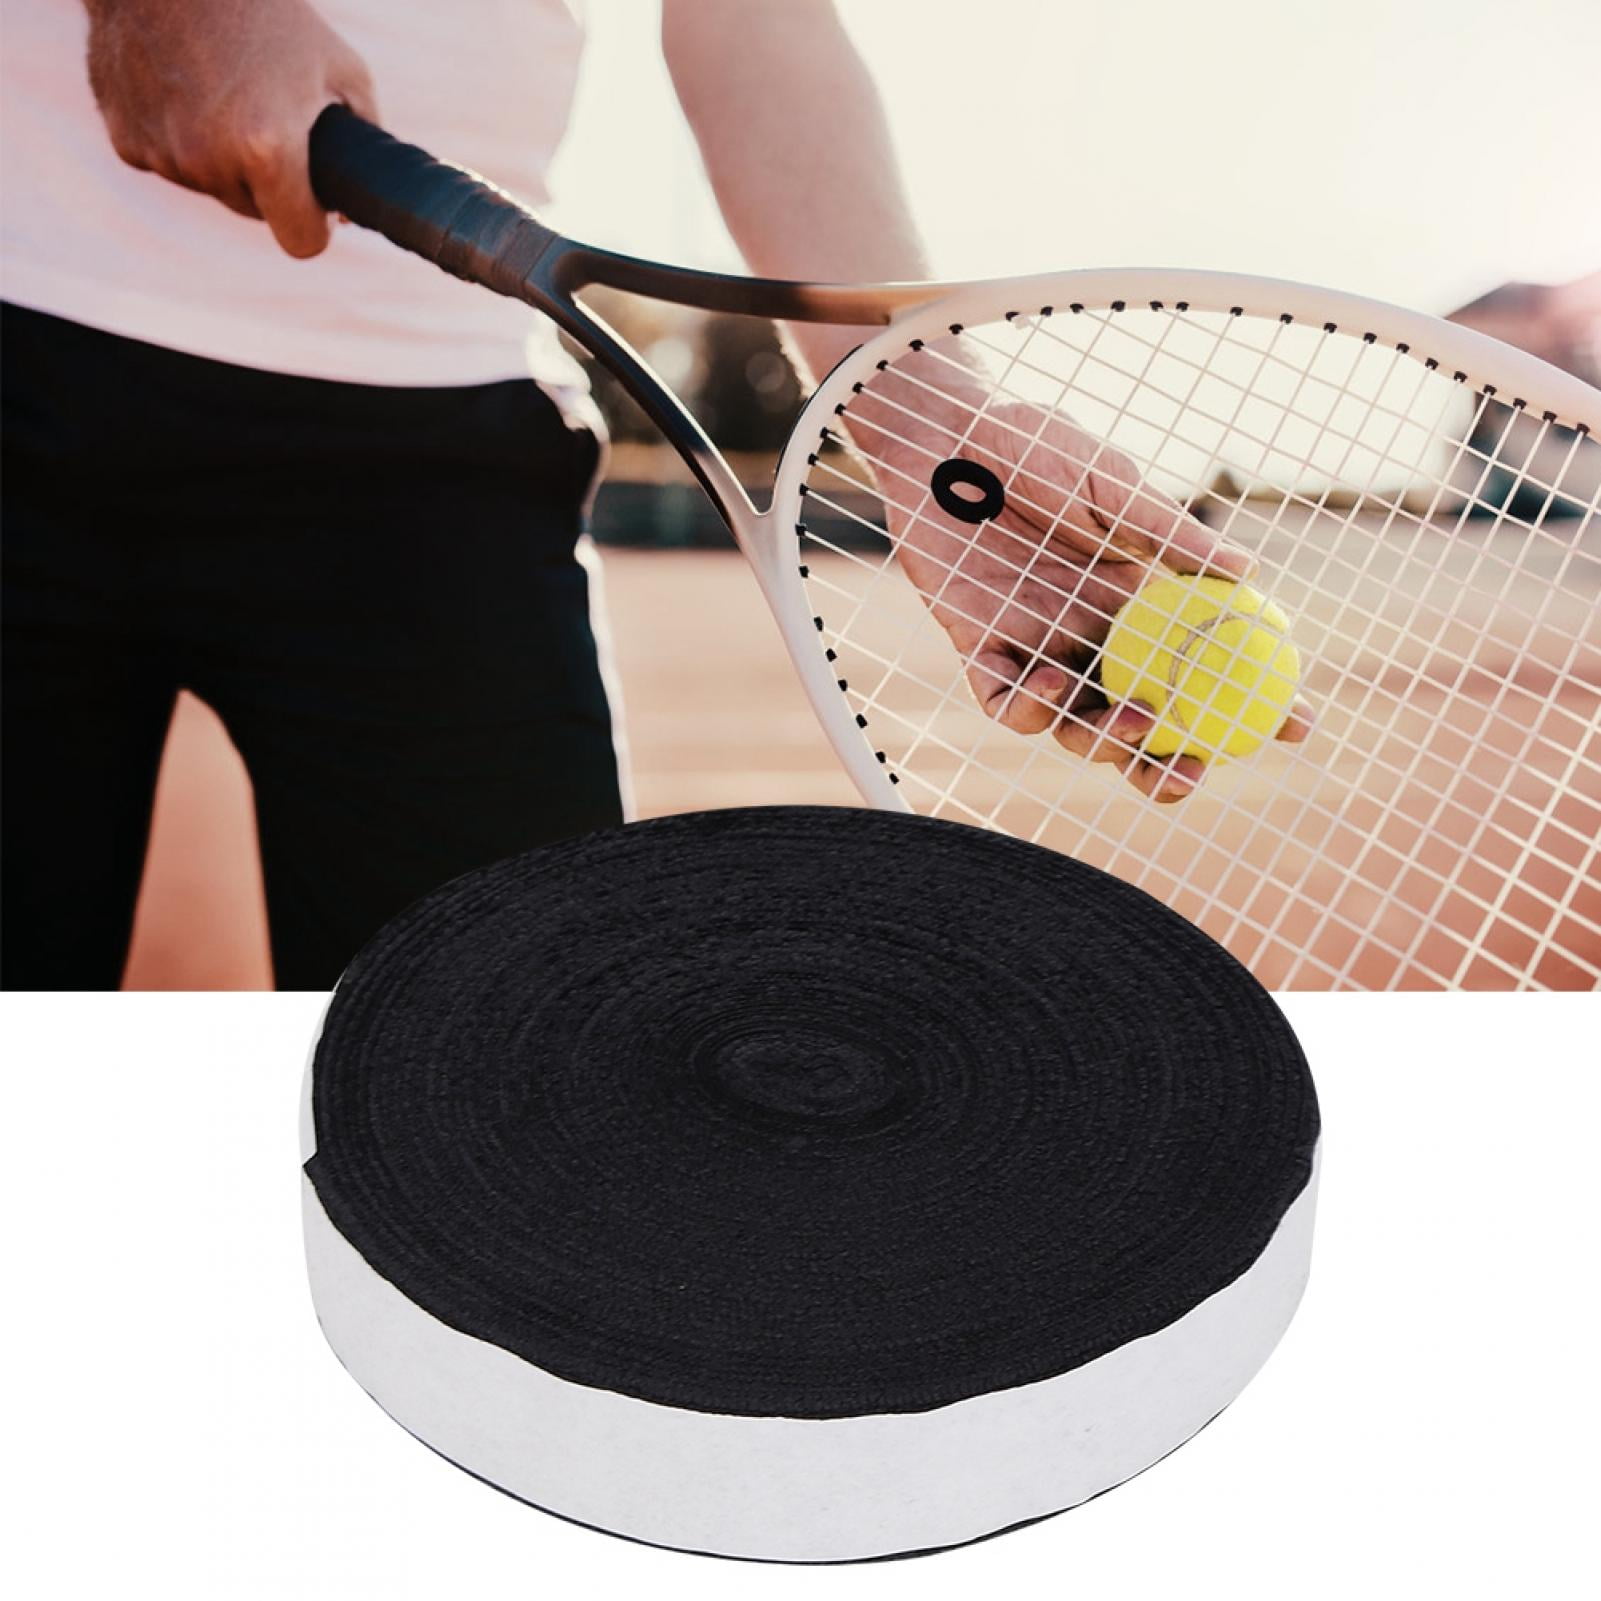 Red Towel Towelling Grip Tape Badminton Squash Tennis Bike handle bars 